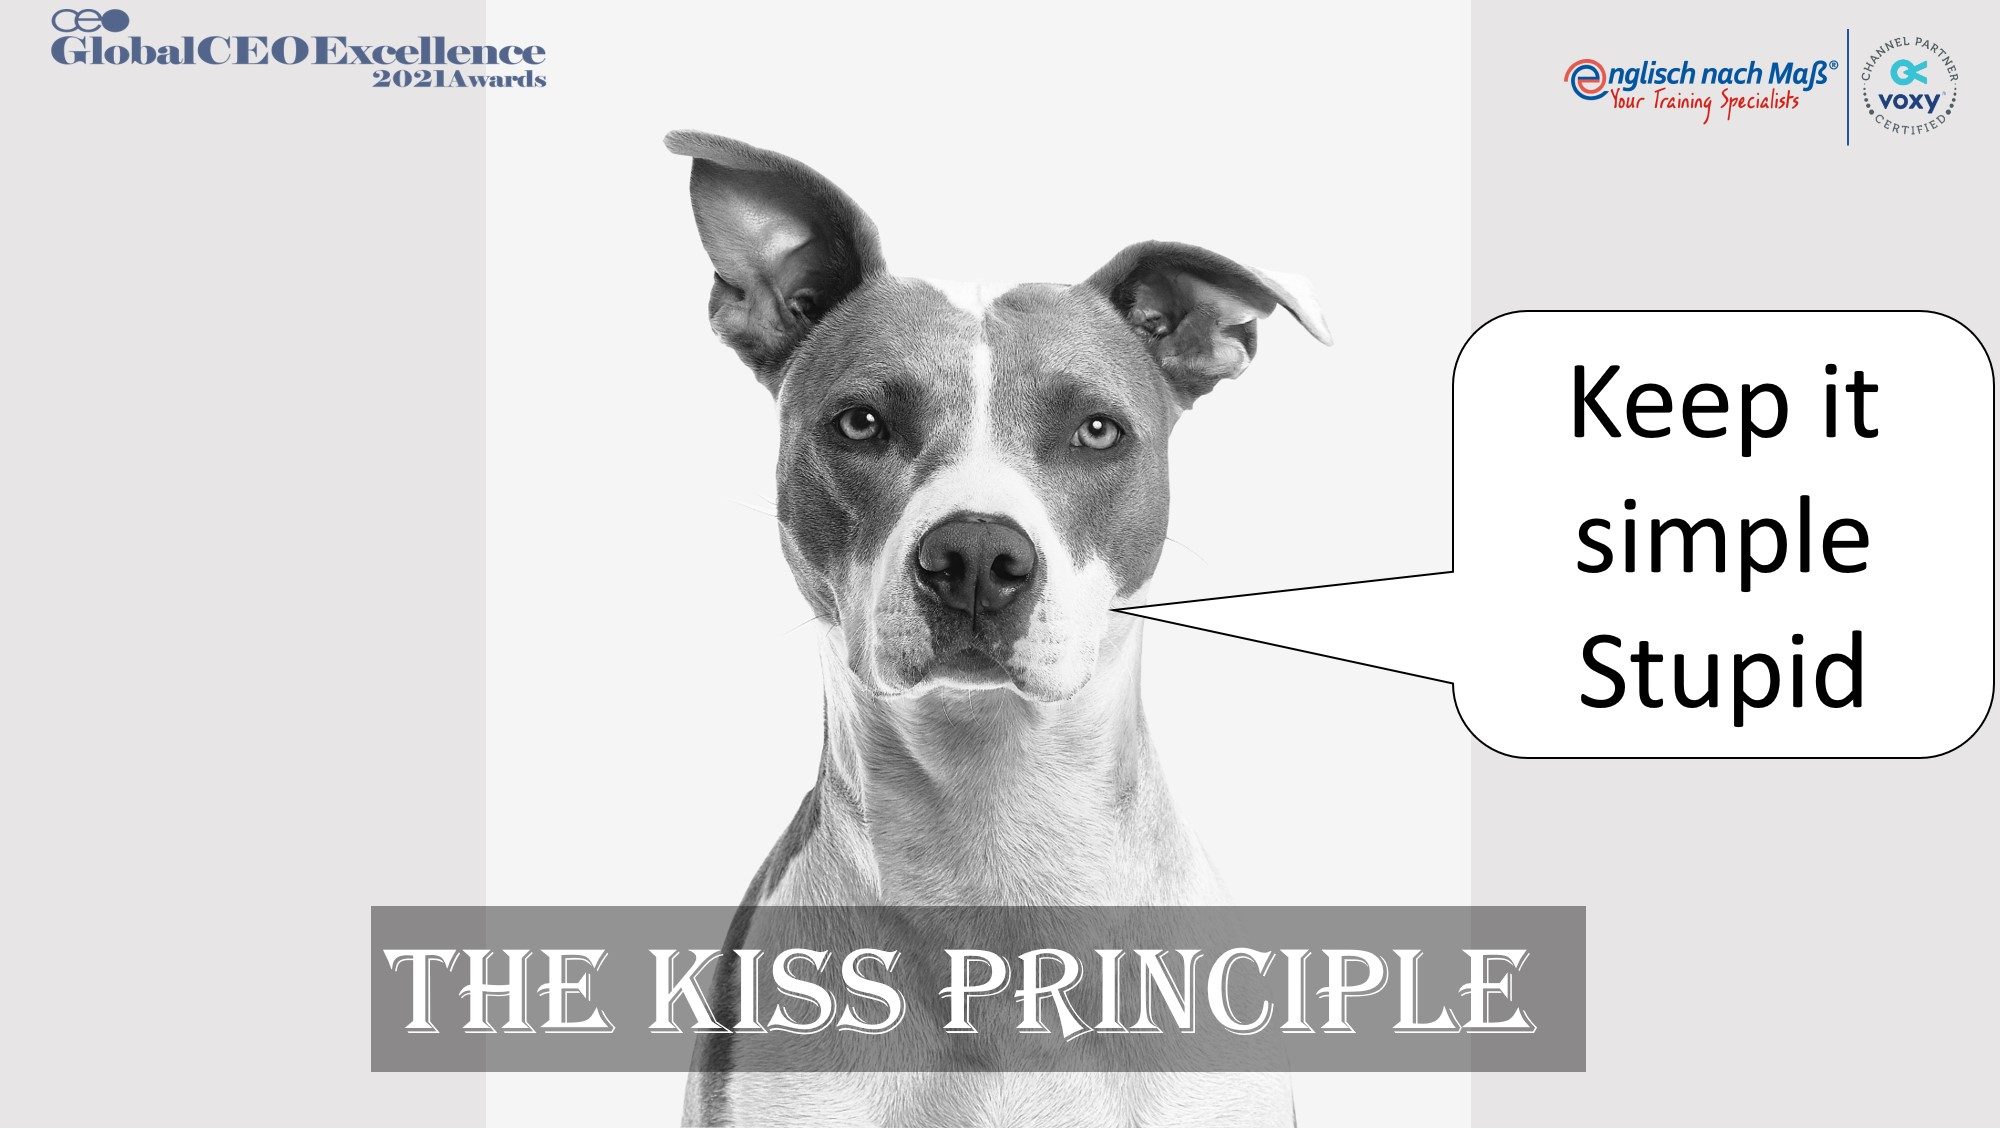 The KISS* principle